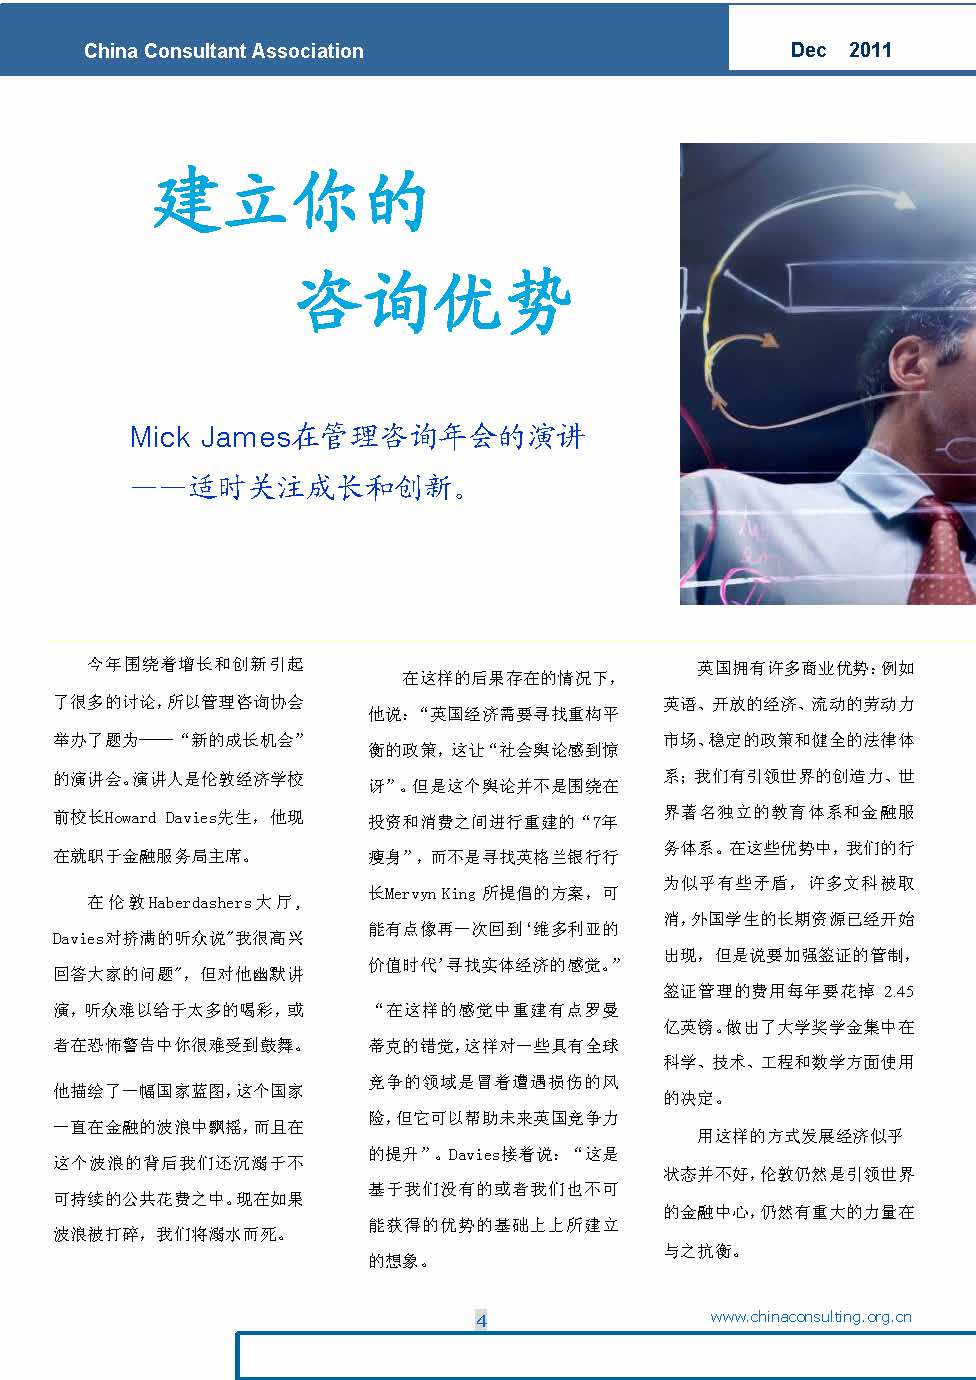 4中国科技咨询协会国际快讯（第四期）_页面_06.jpg